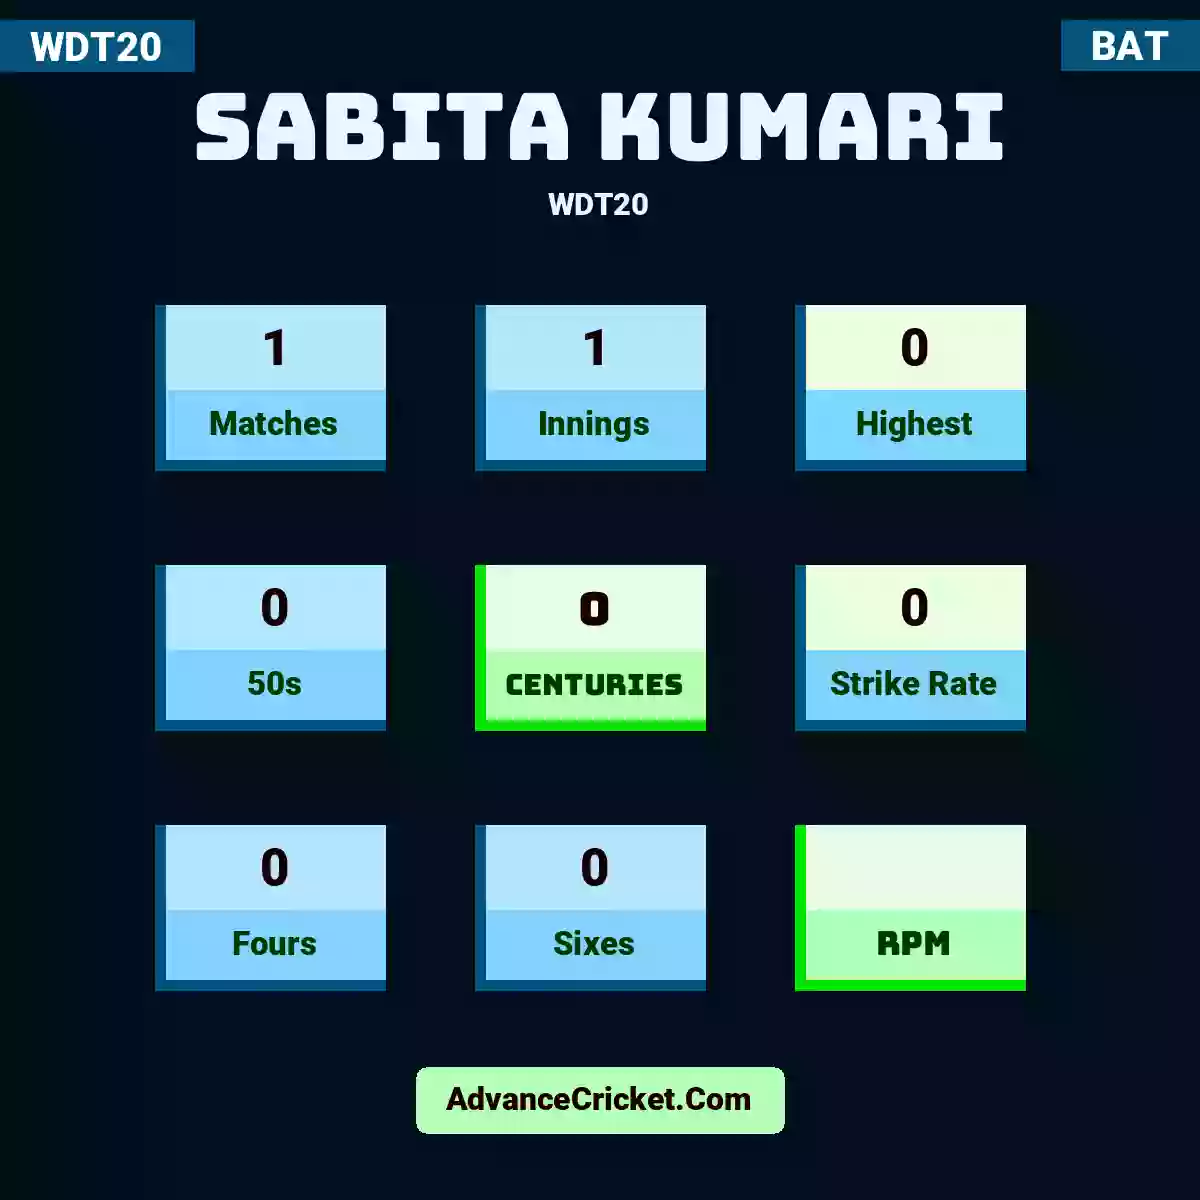 Sabita Kumari WDT20 , Sabita Kumari played 1 matches, scored 0 runs as highest, 0 half-centuries, and 0 centuries, with a strike rate of 0. S.Kumari hit 0 fours and 0 sixes.